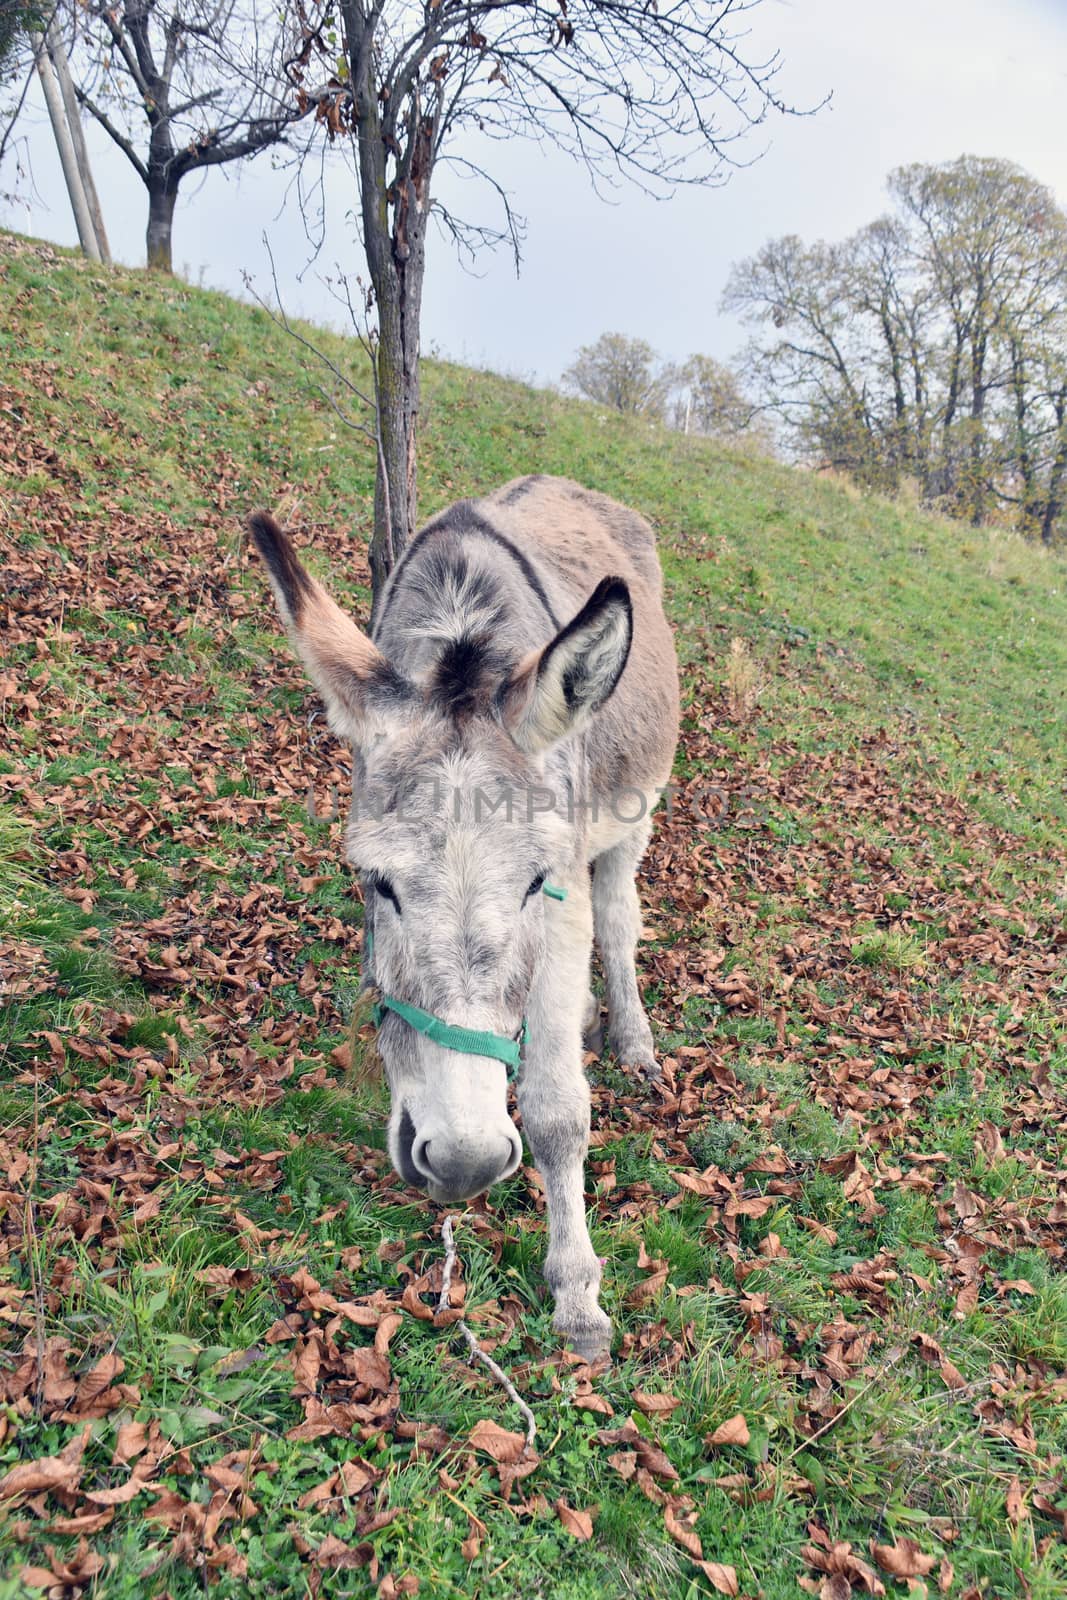 The donkey by bongia